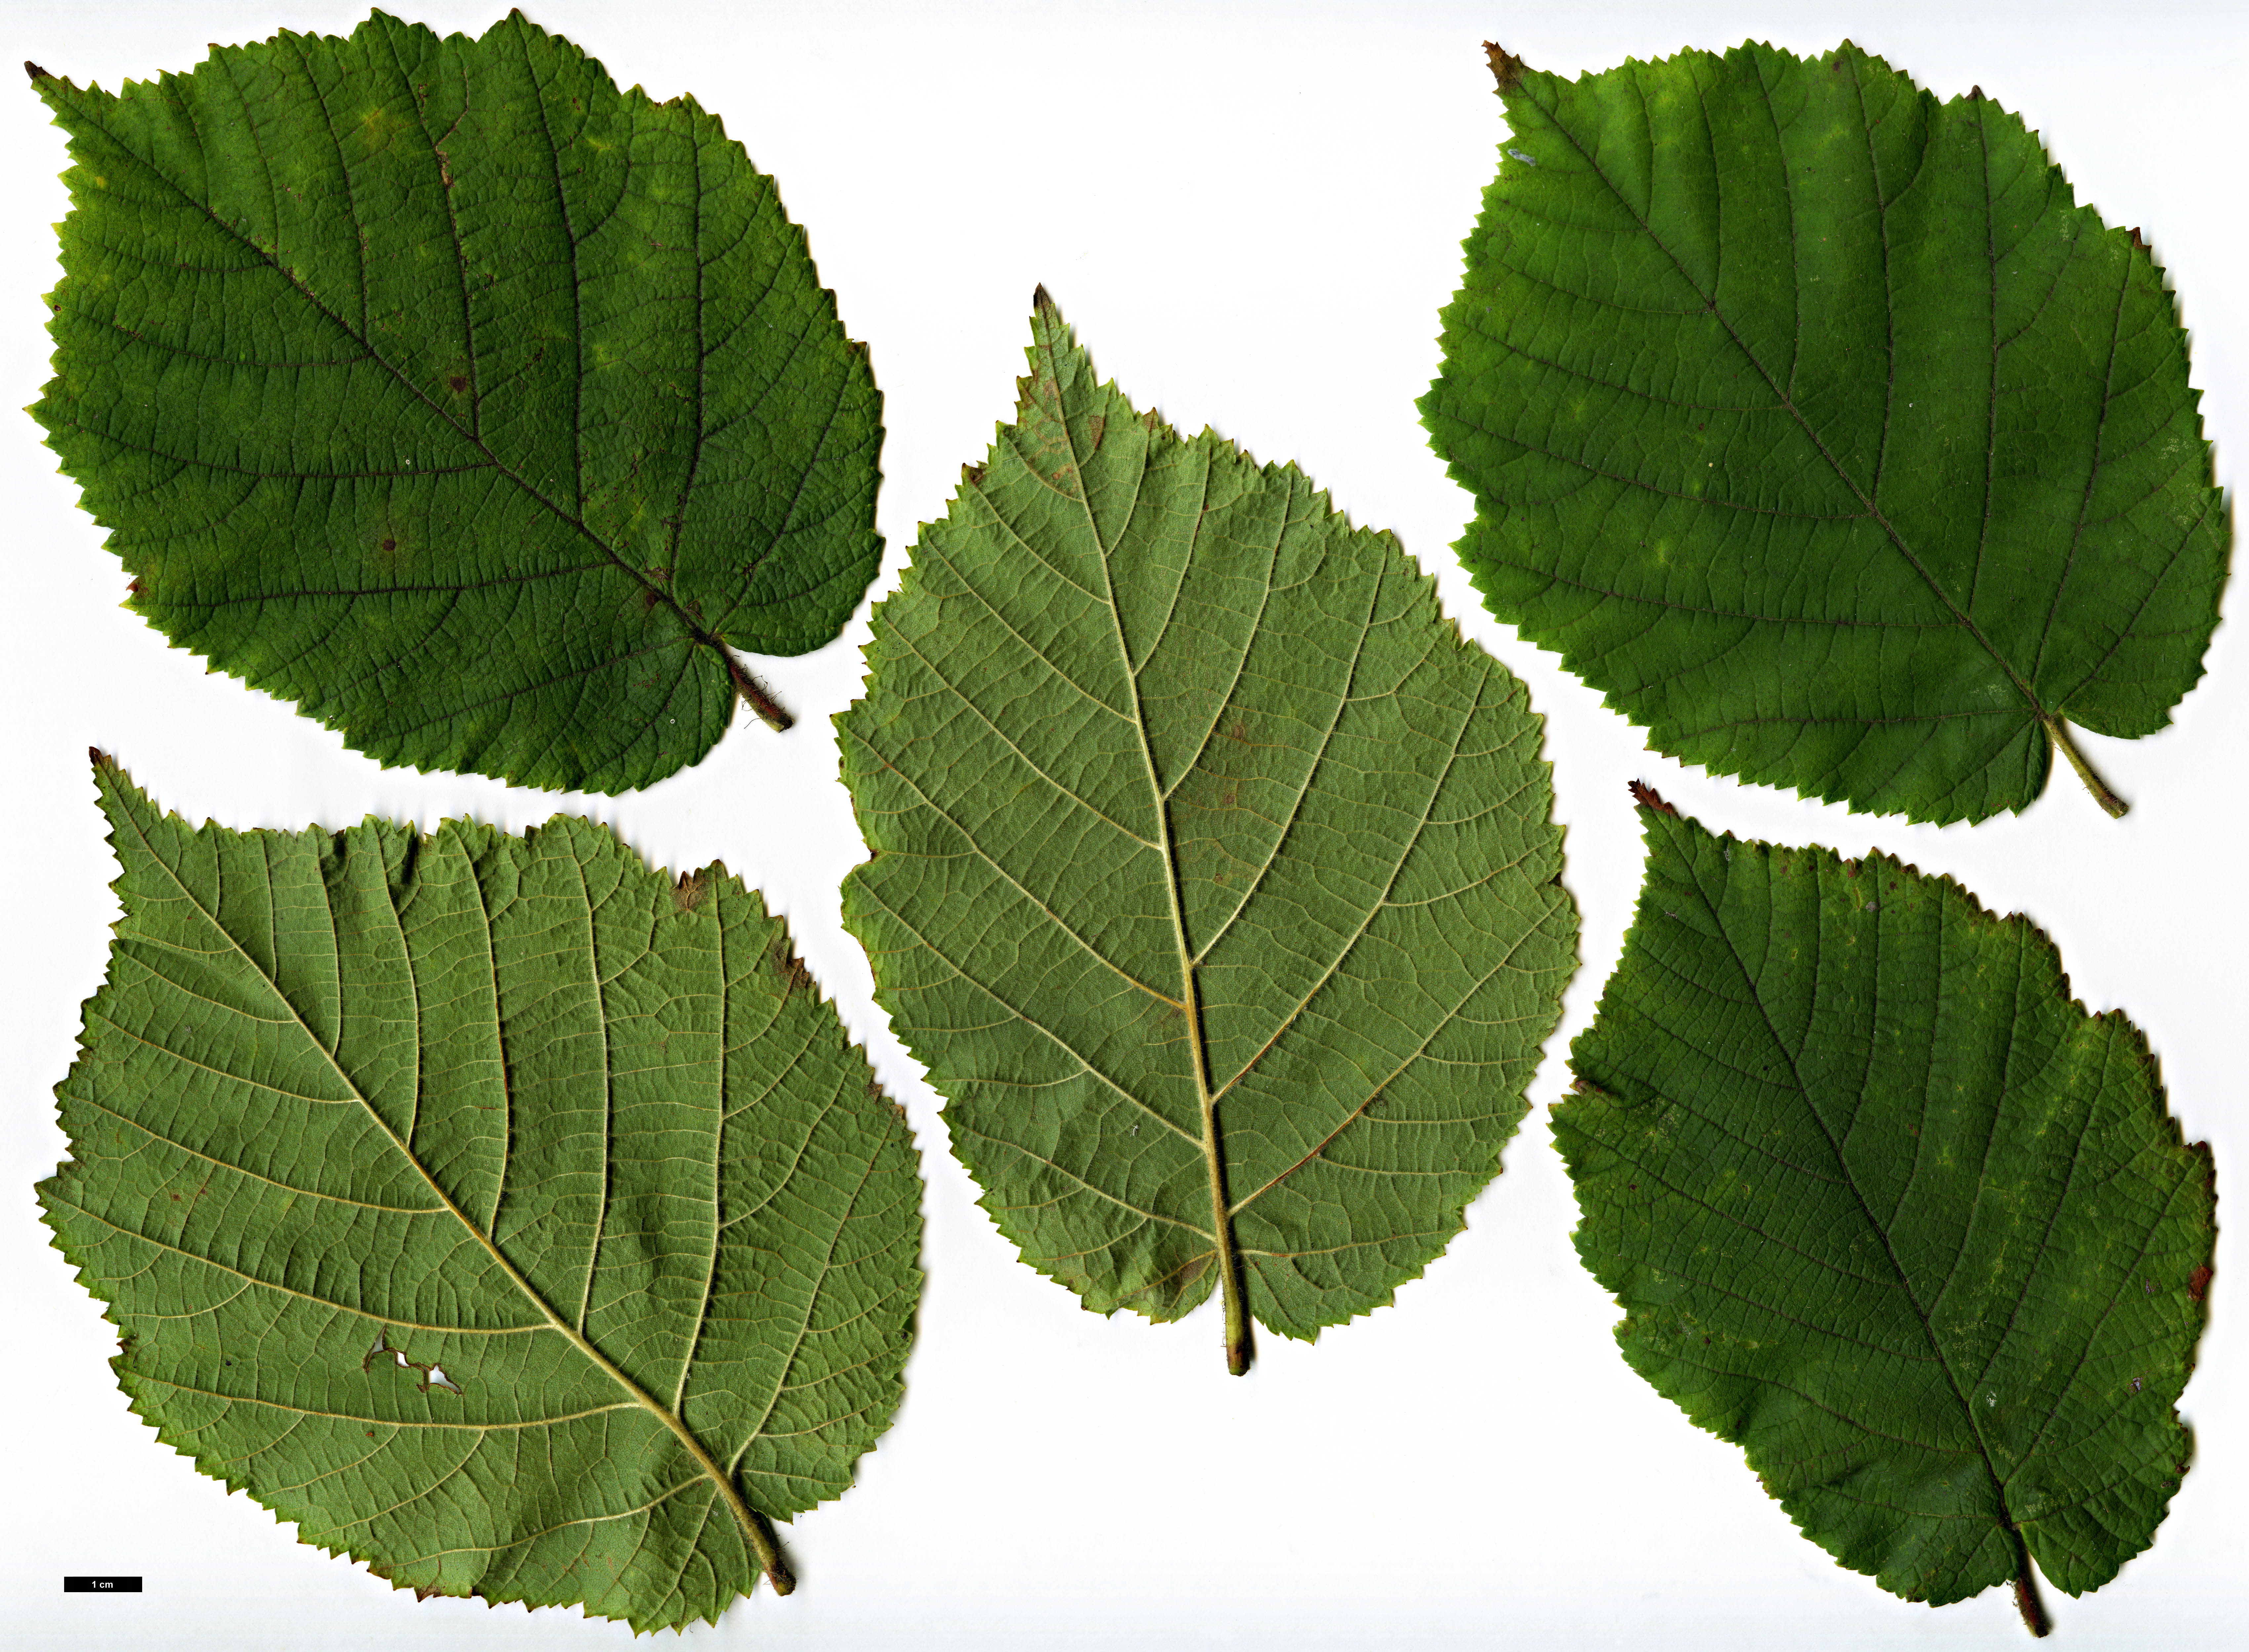 High resolution image: Family: Betulaceae - Genus: Corylus - Taxon: heterophylla - SpeciesSub: var. sutchensis